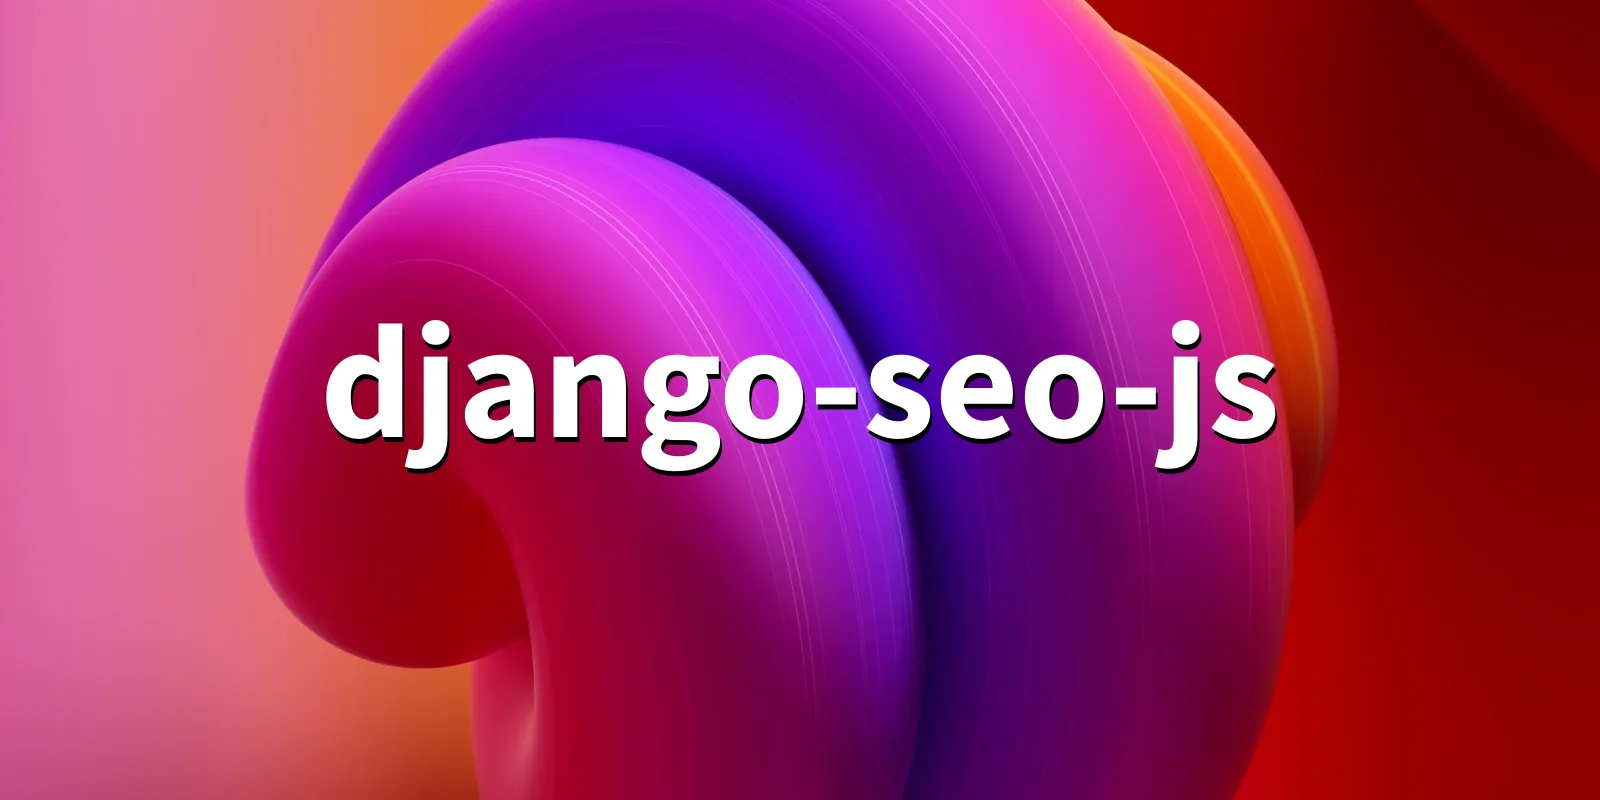 /pkg/d/django-seo-js/django-seo-js-banner.webp